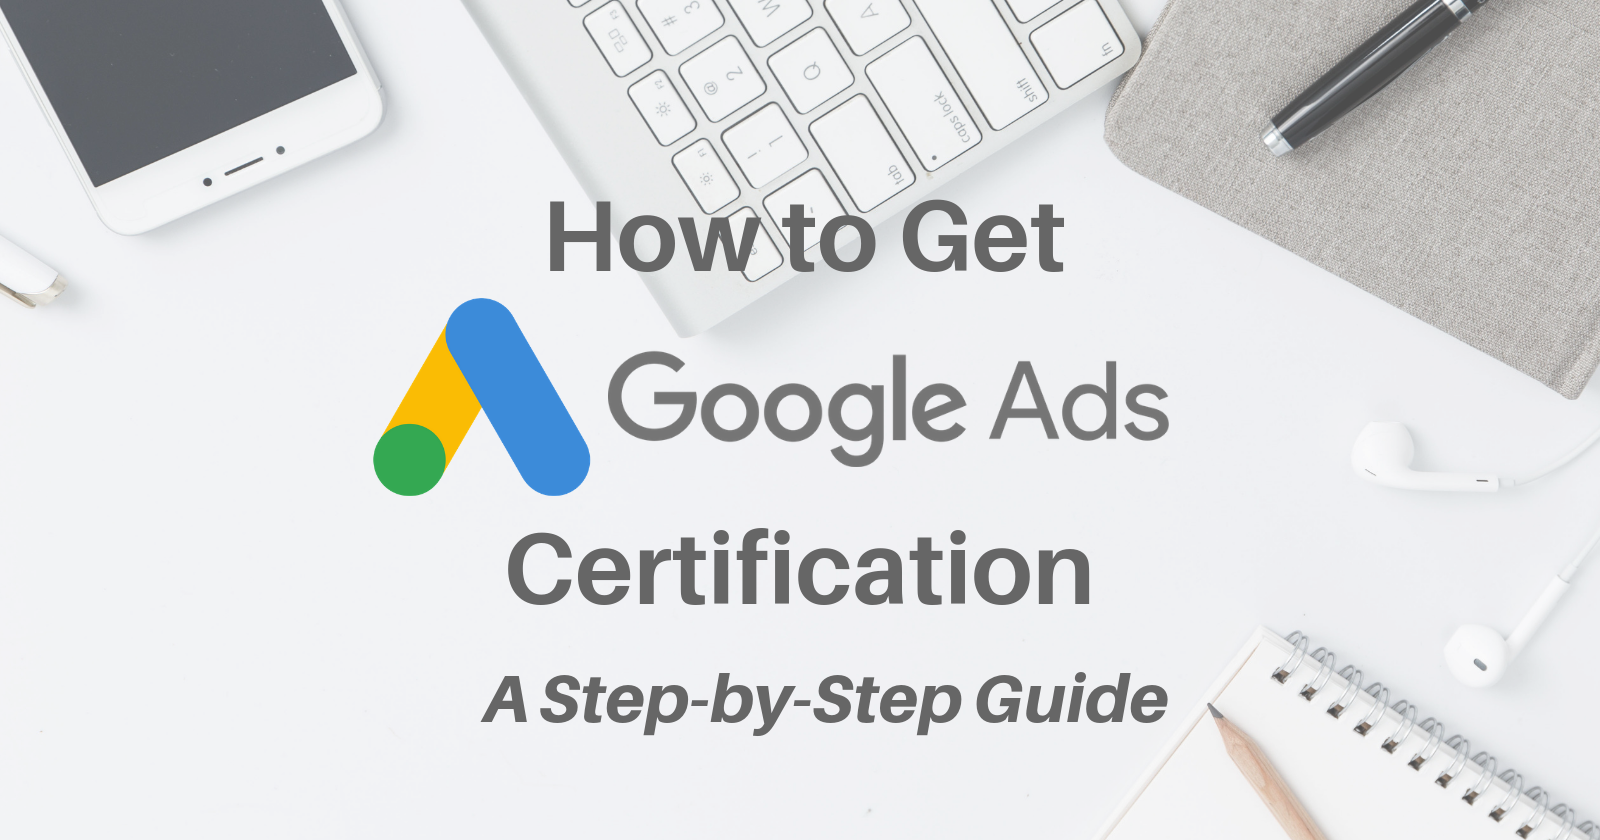 Google Ads certification là gì? Tại sao marketer cần nó?